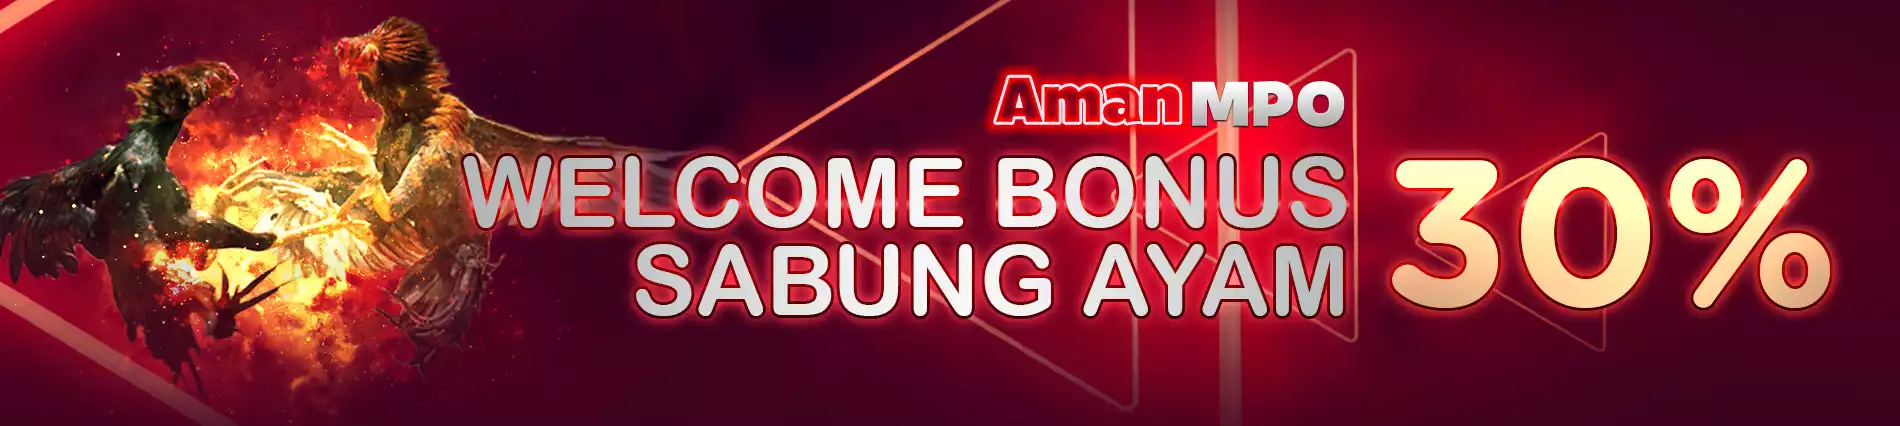 WELCOME BONUS SABUNG AYAM